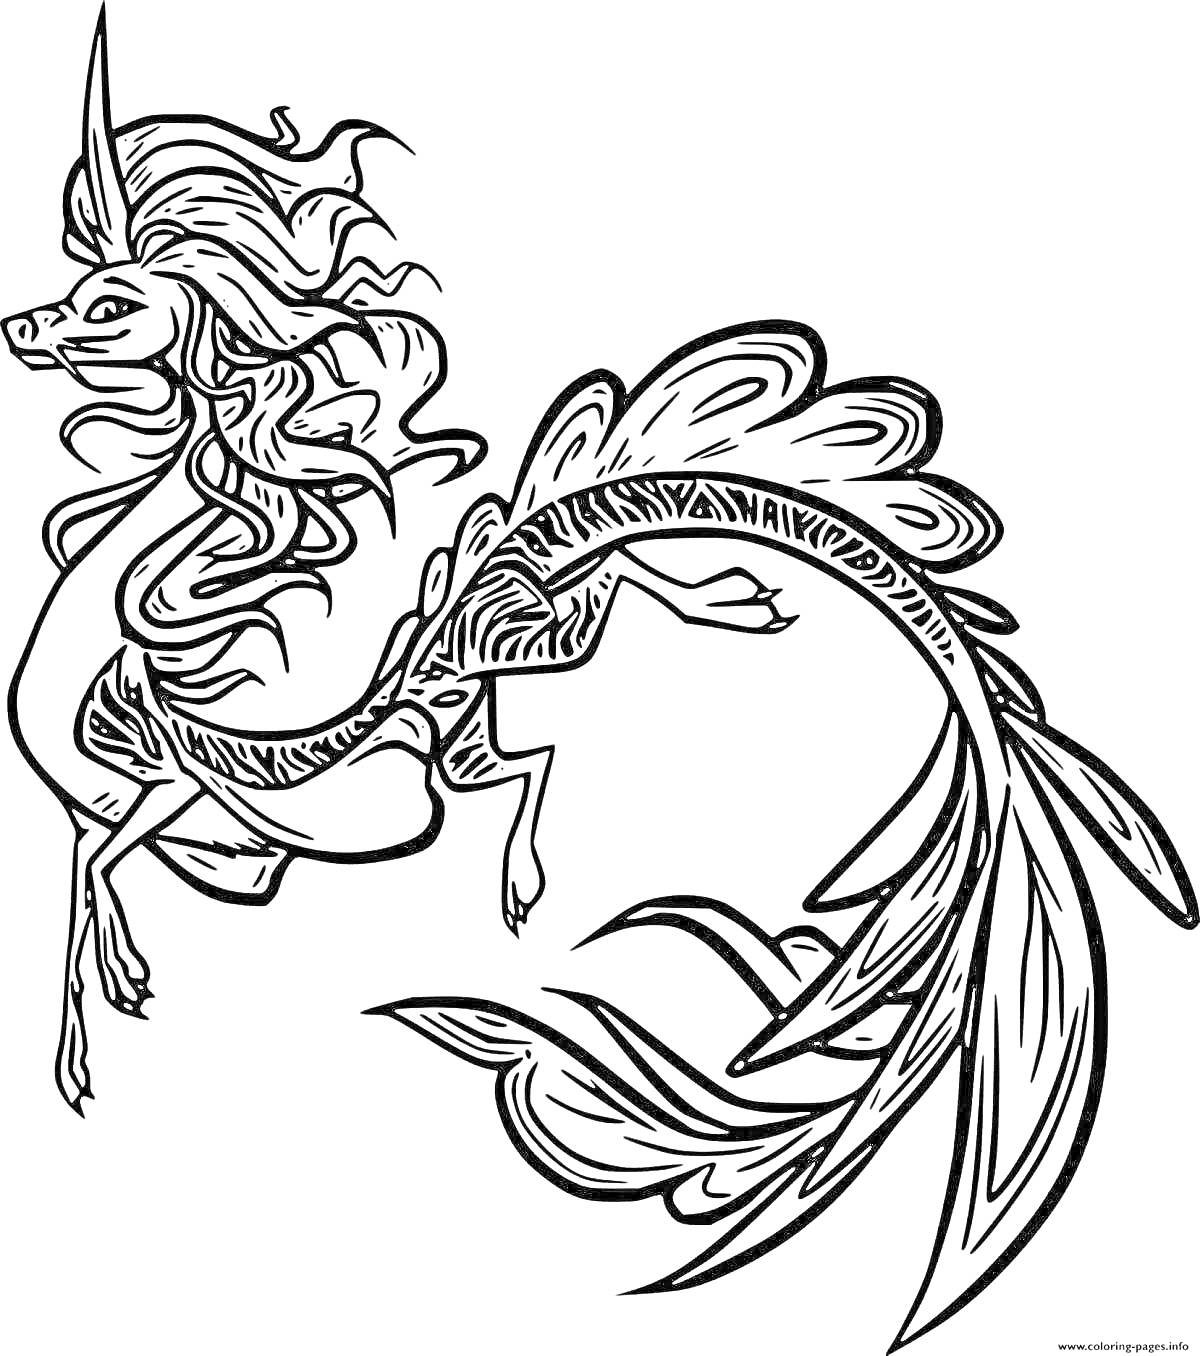 Раскраска Сису дракон с длинной гривой, закрученным хвостом и декоративными узорами на теле